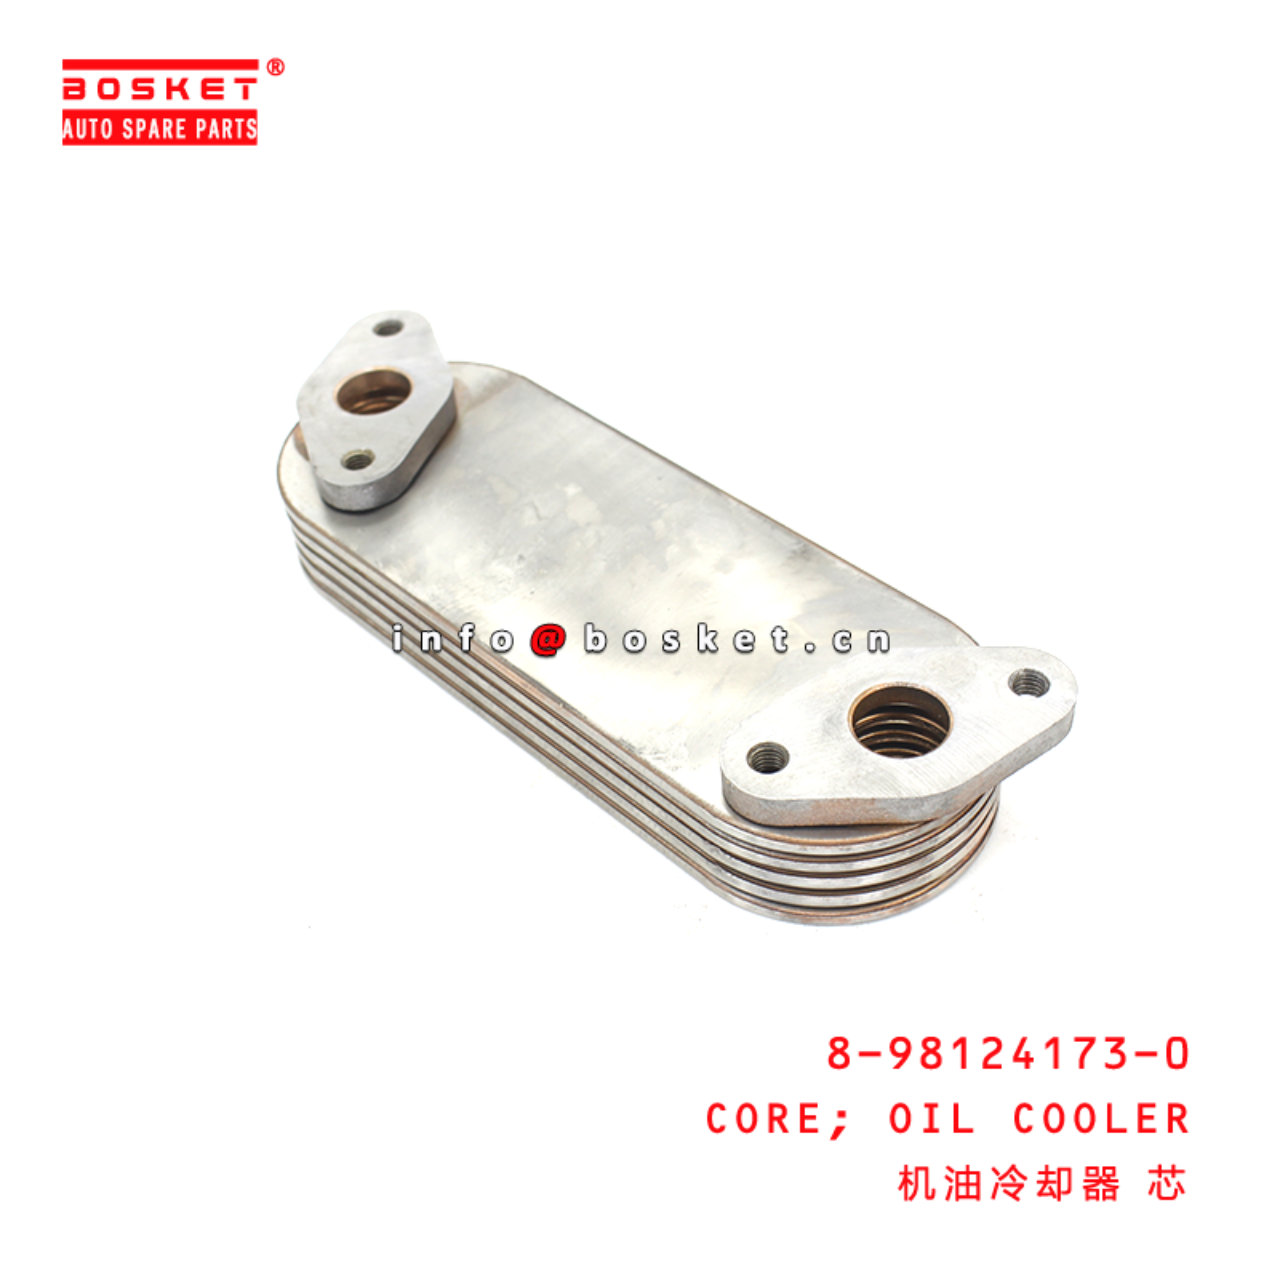 8-98124173-0 Oil Cooler Core suitable for ISUZU DMAX 4JJ1 4JK1 8981241730